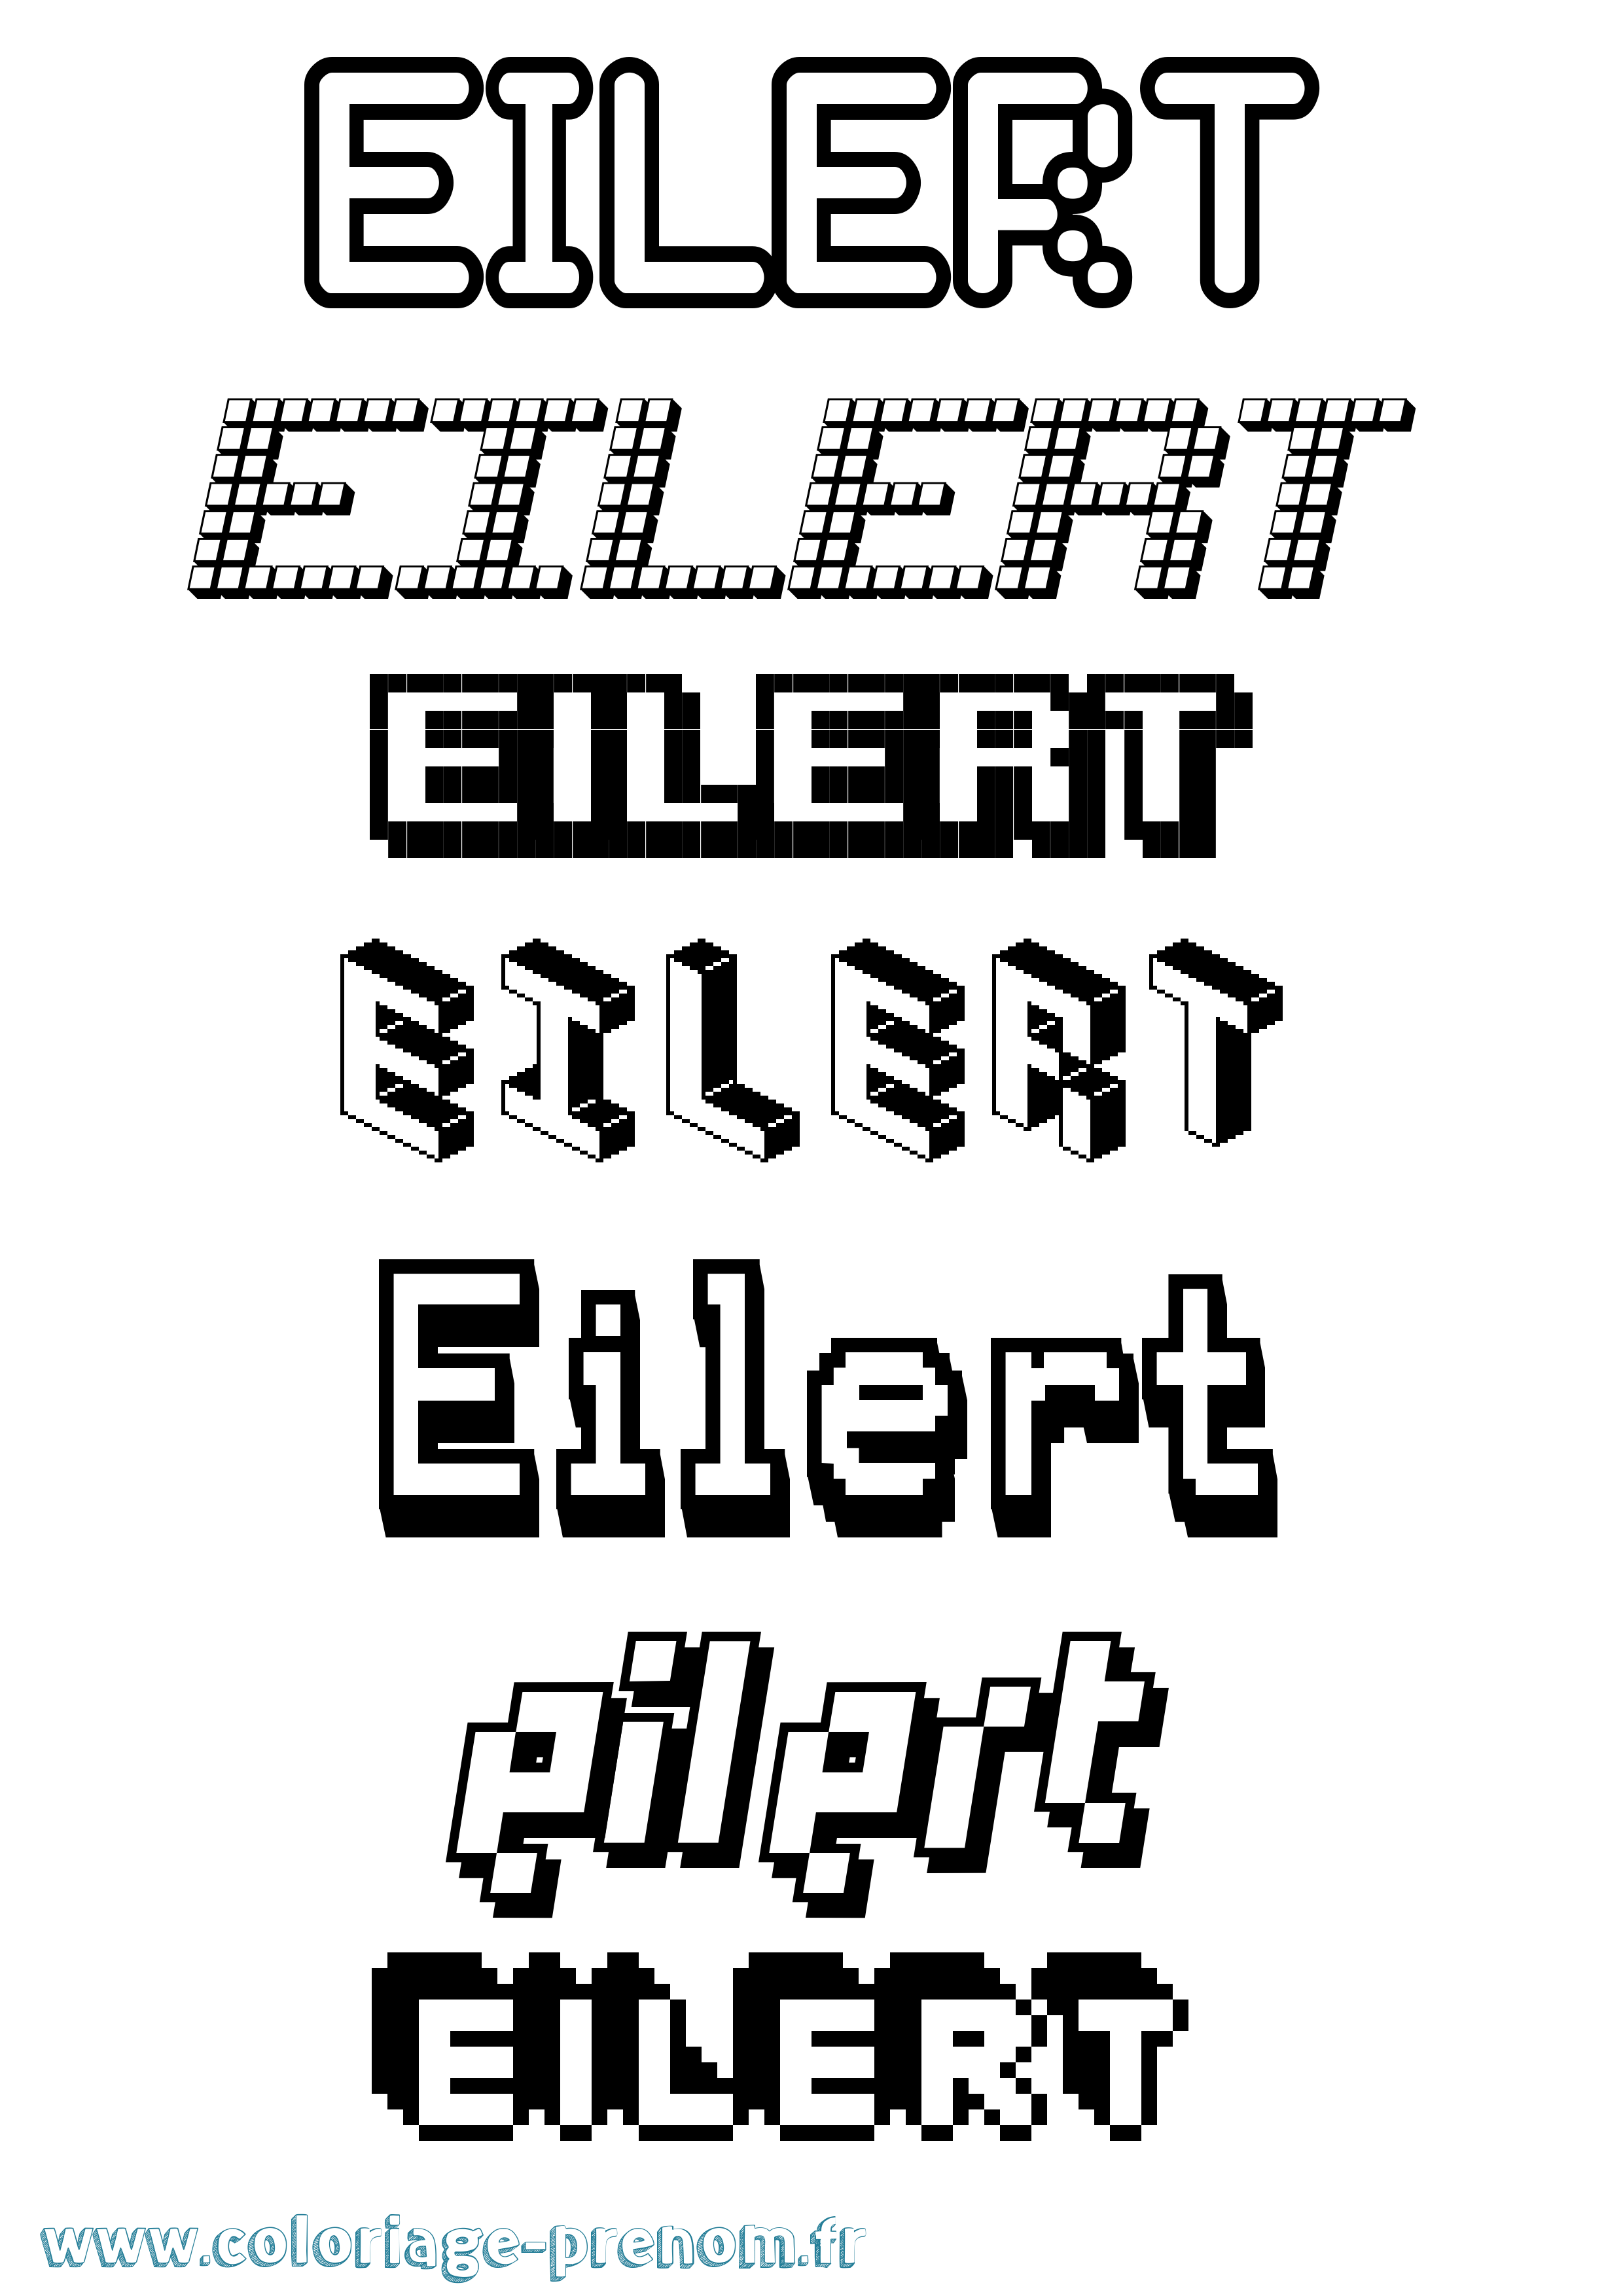 Coloriage prénom Eilert Pixel